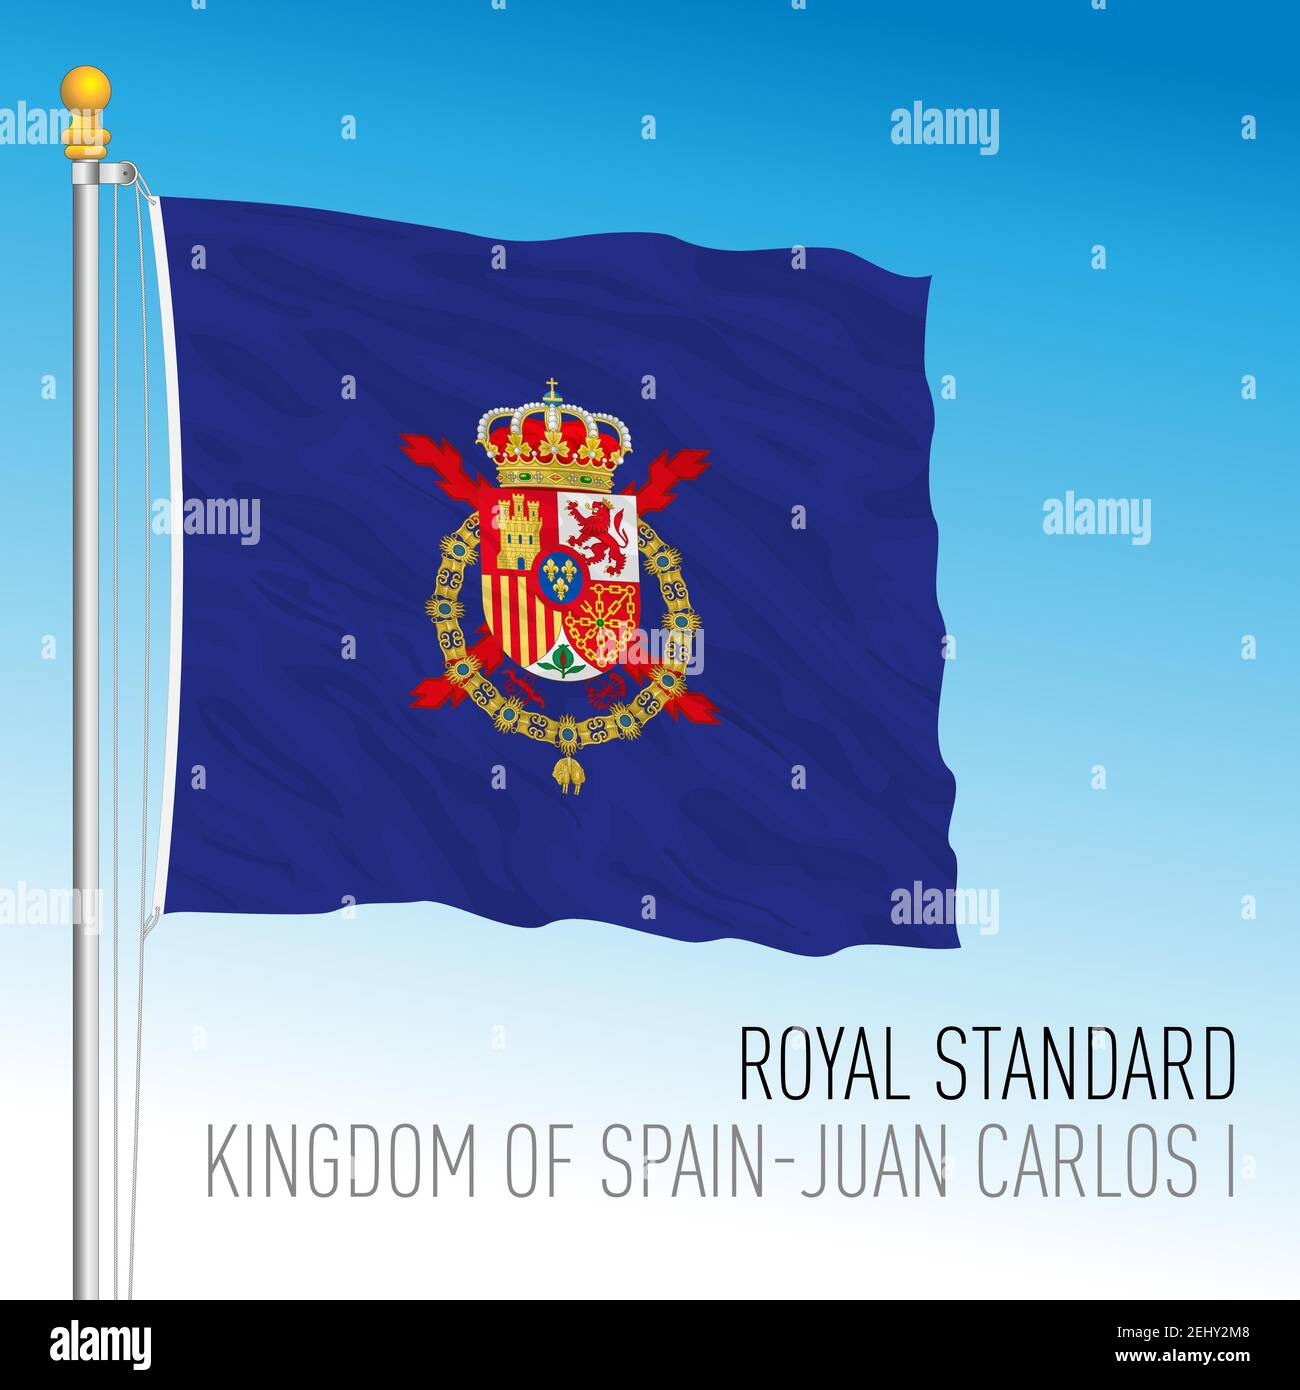 Royal Standard Juan Carlos I flag, Kingdom of Spain, vector illustration Stock Vector